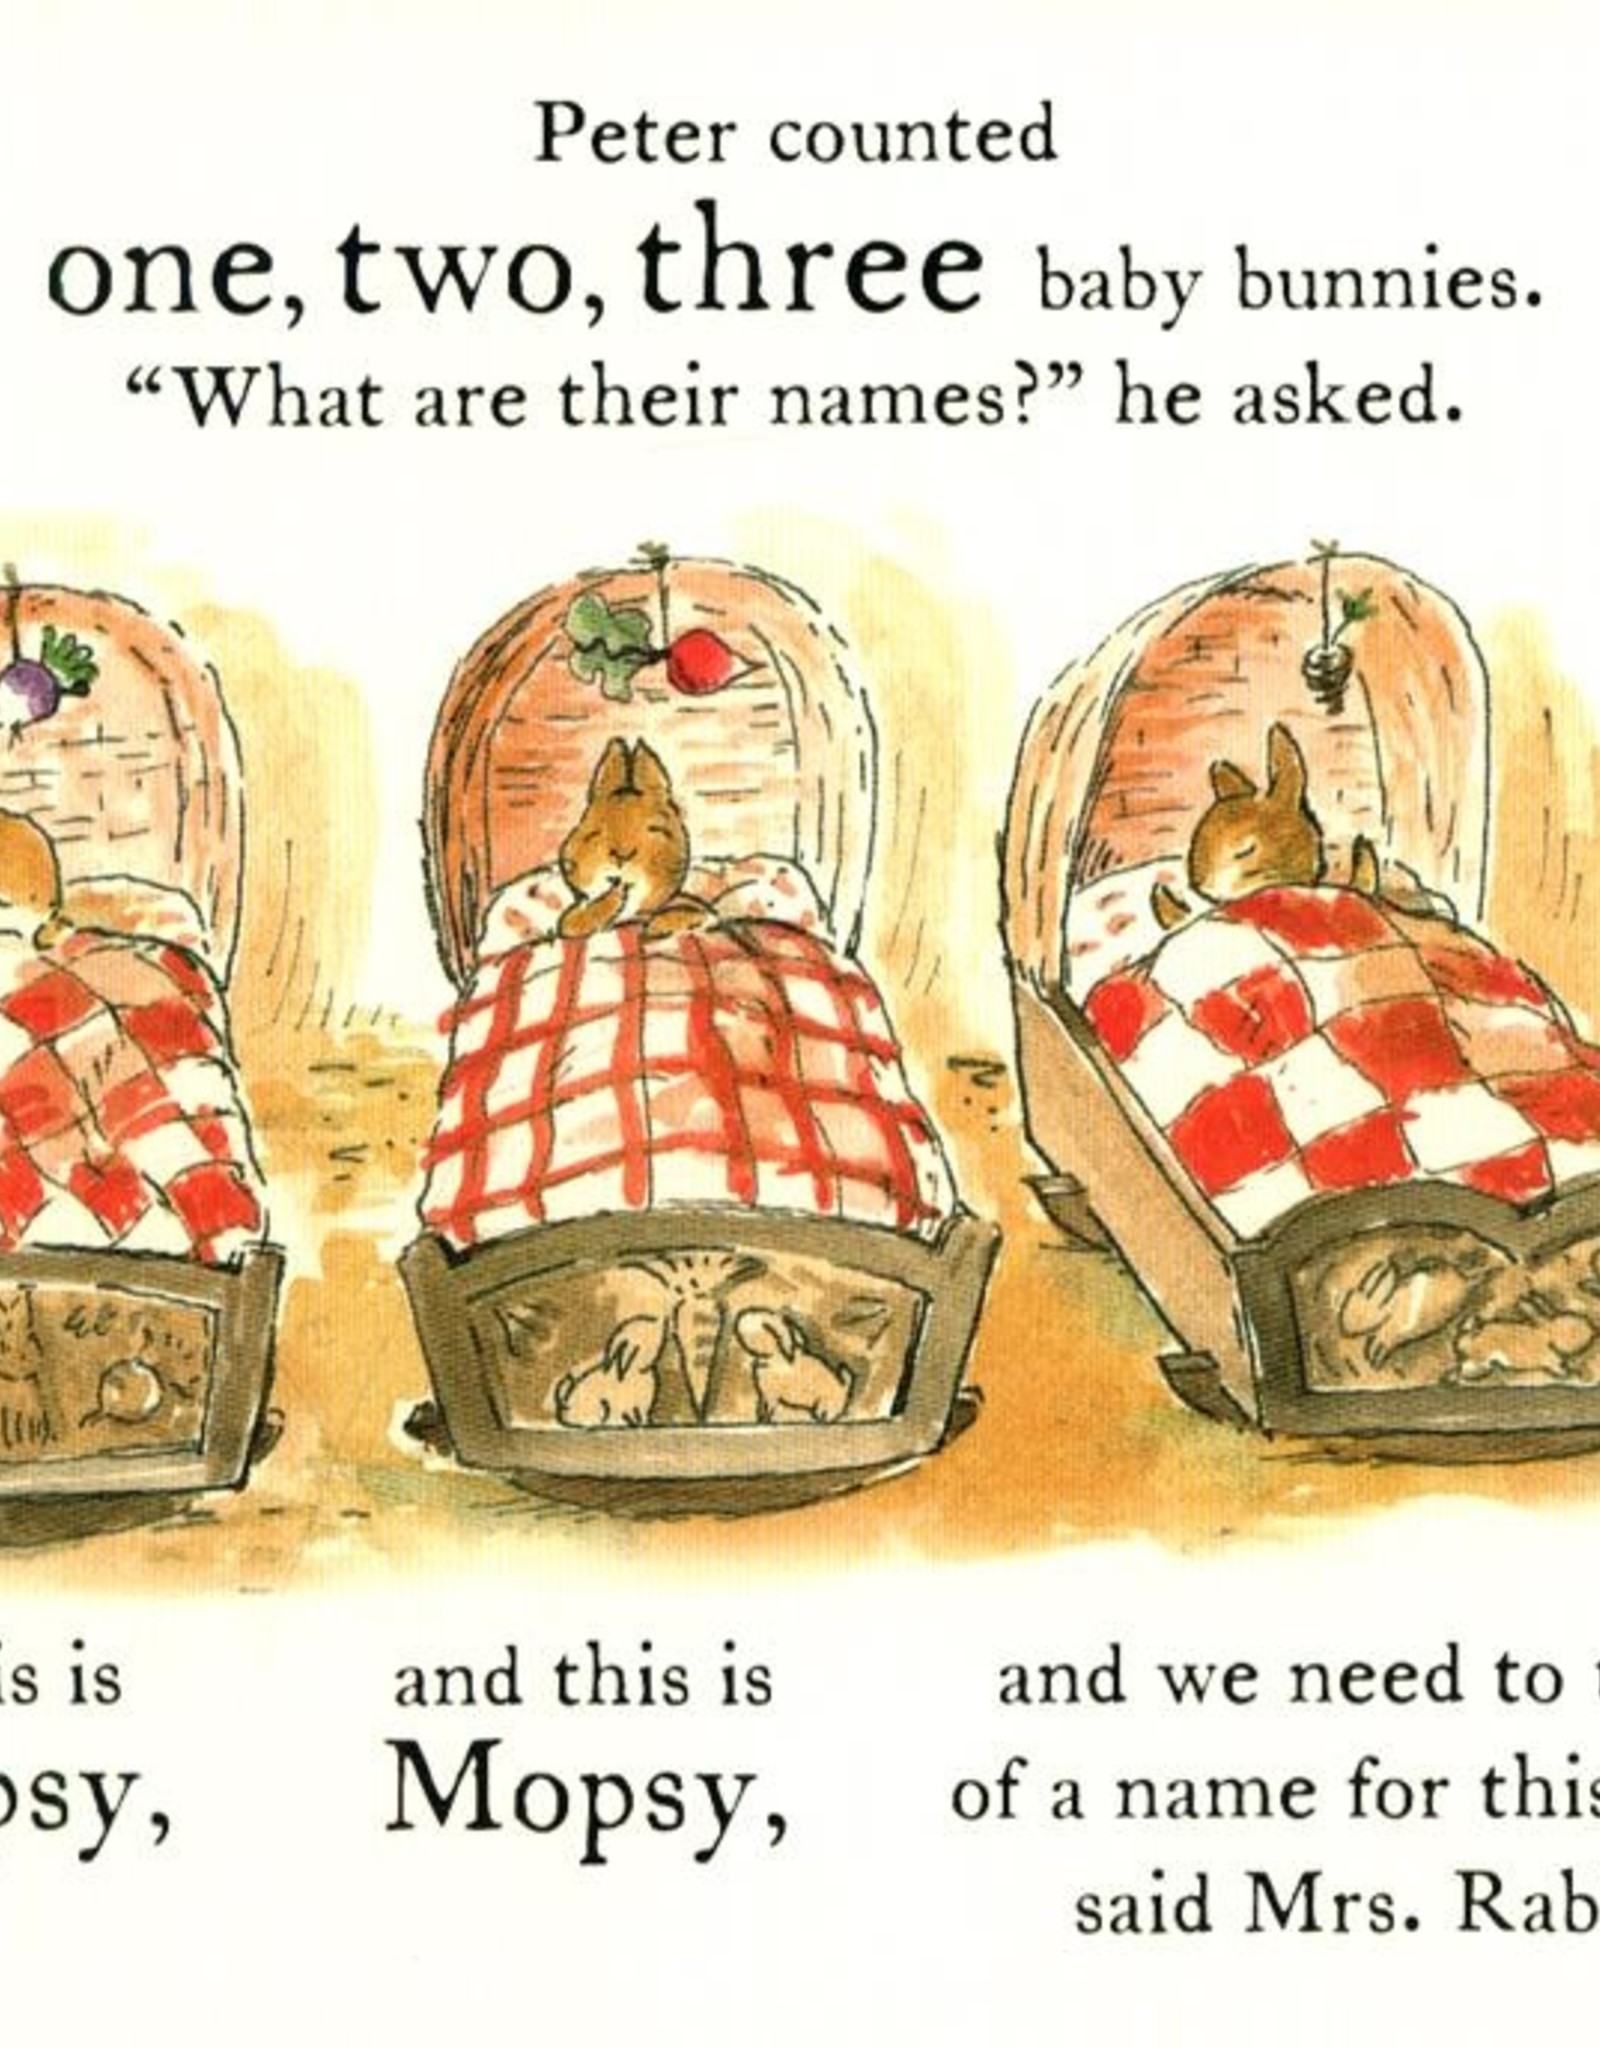 THREE LITTLE BUNNIES (A PETER RABBIT TALE)